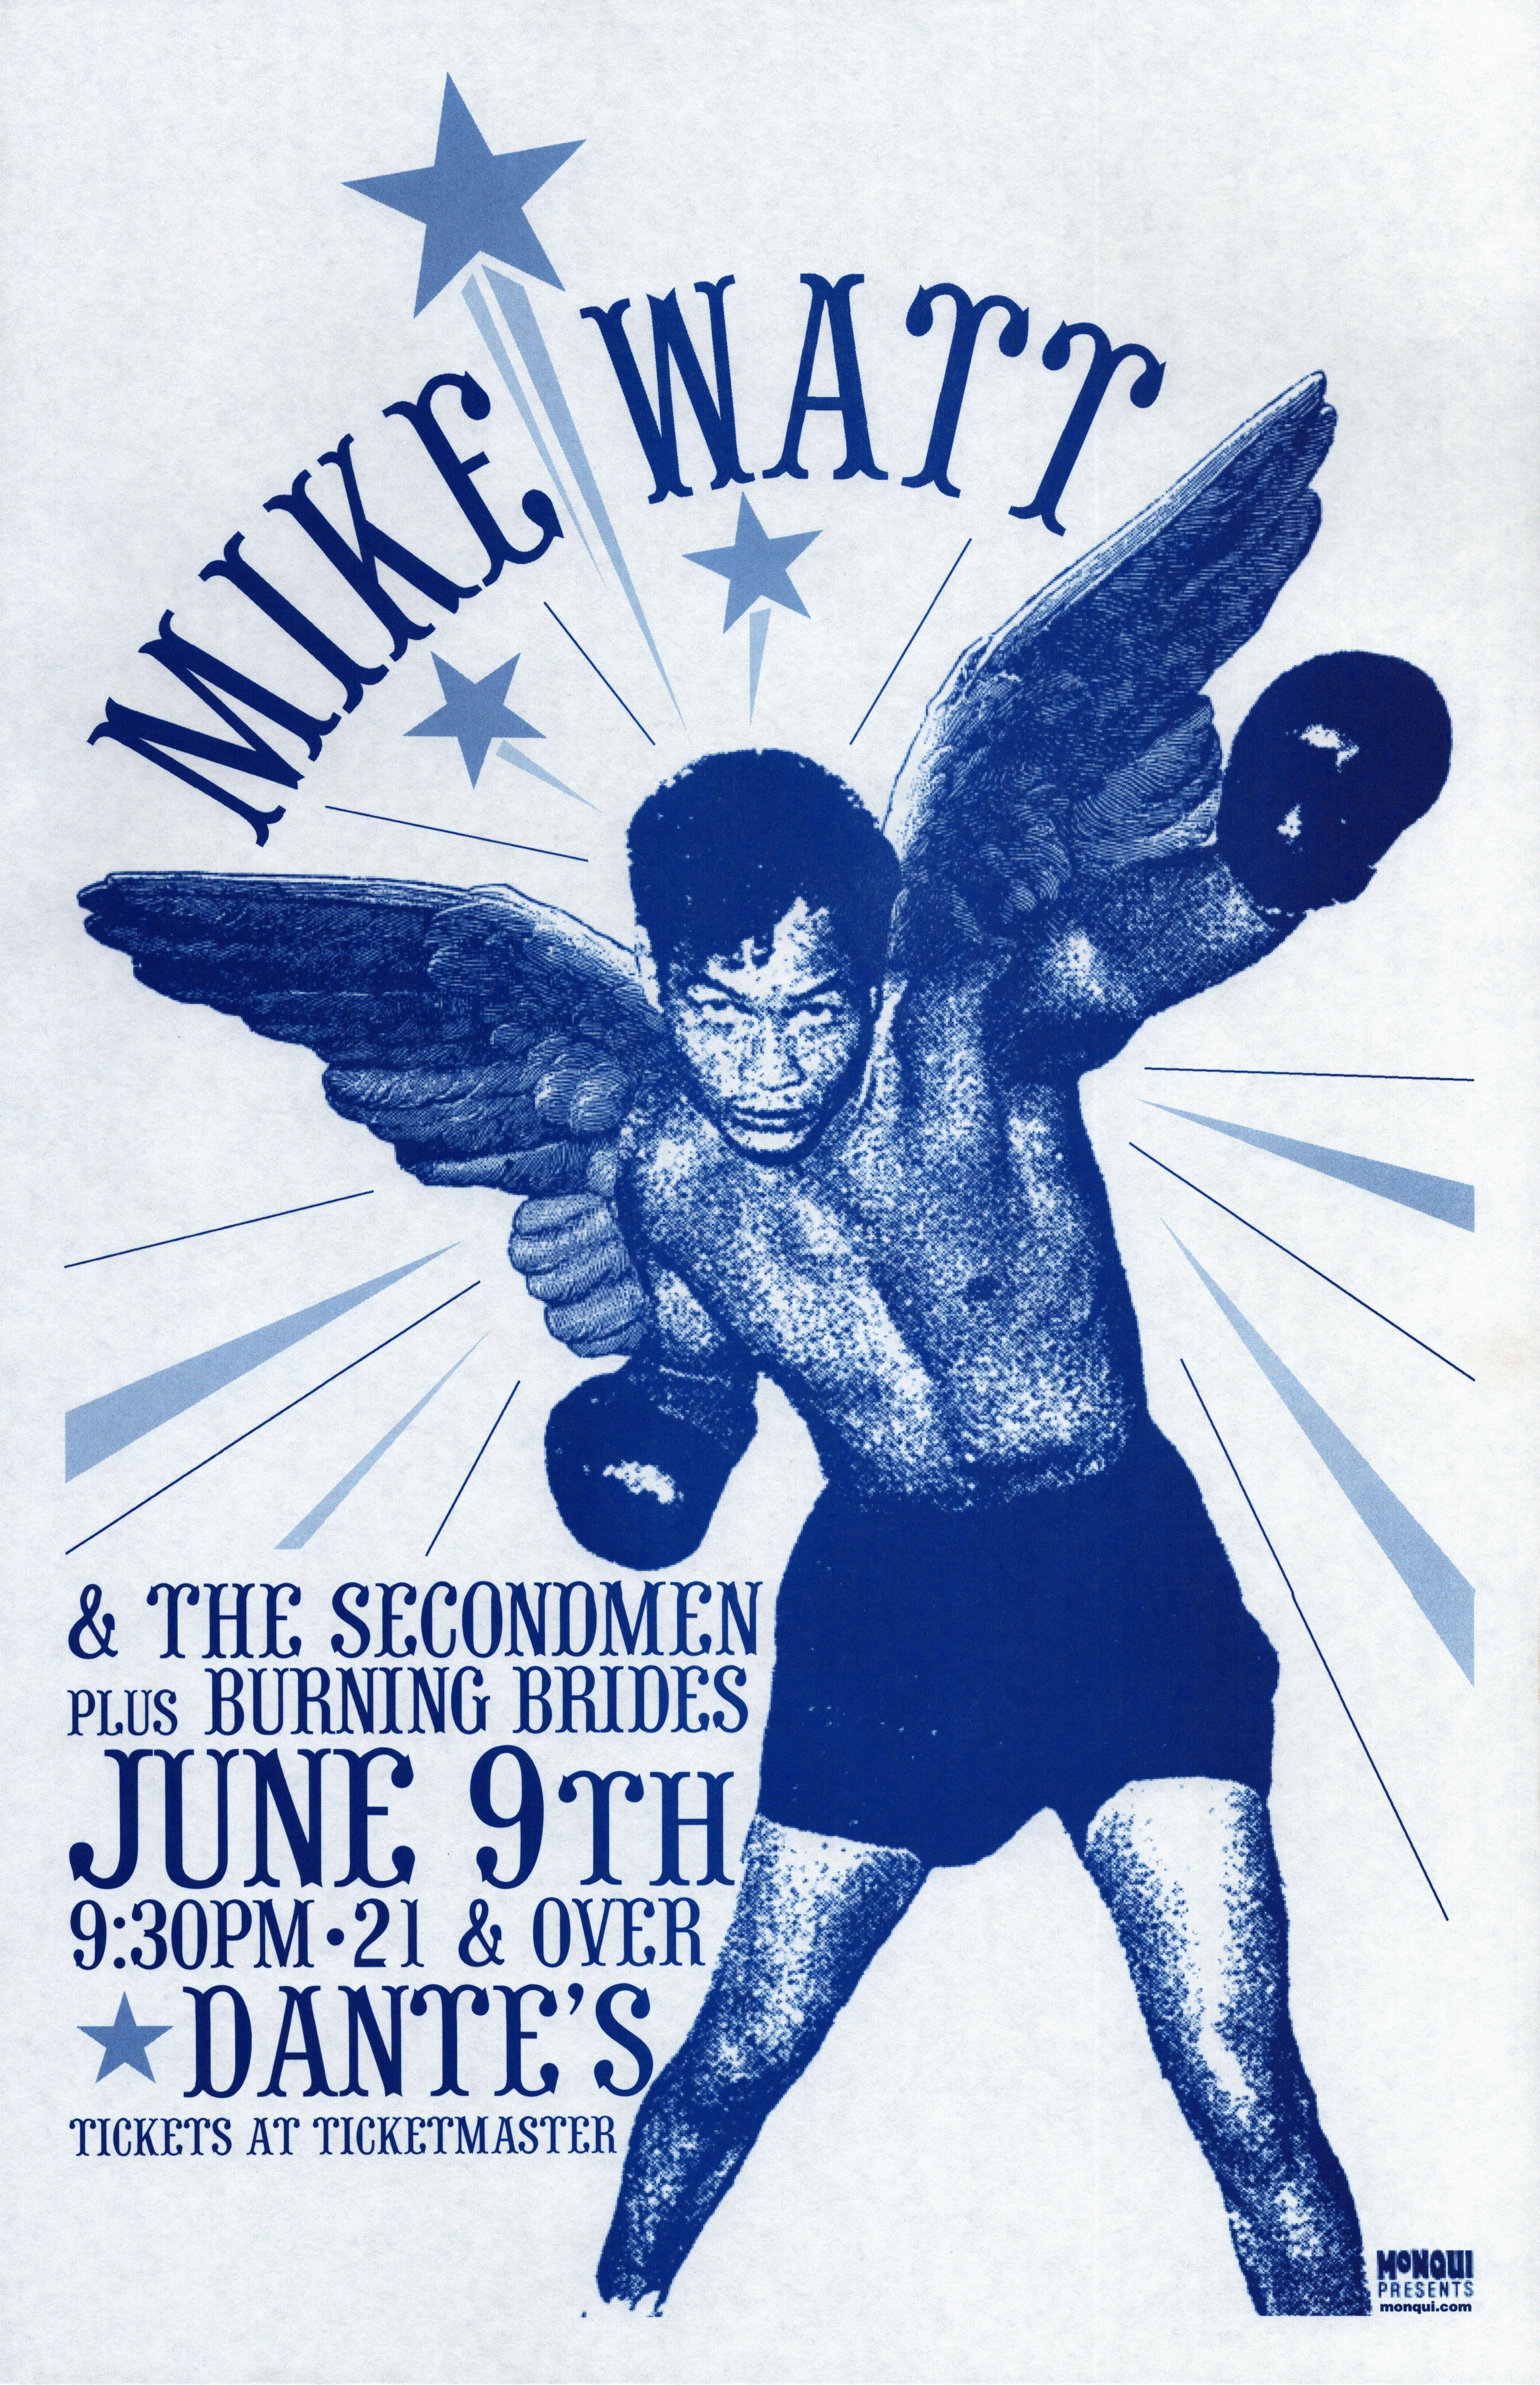 MXP-143.8 Mike Watt Dantes 2002 Concert Poster